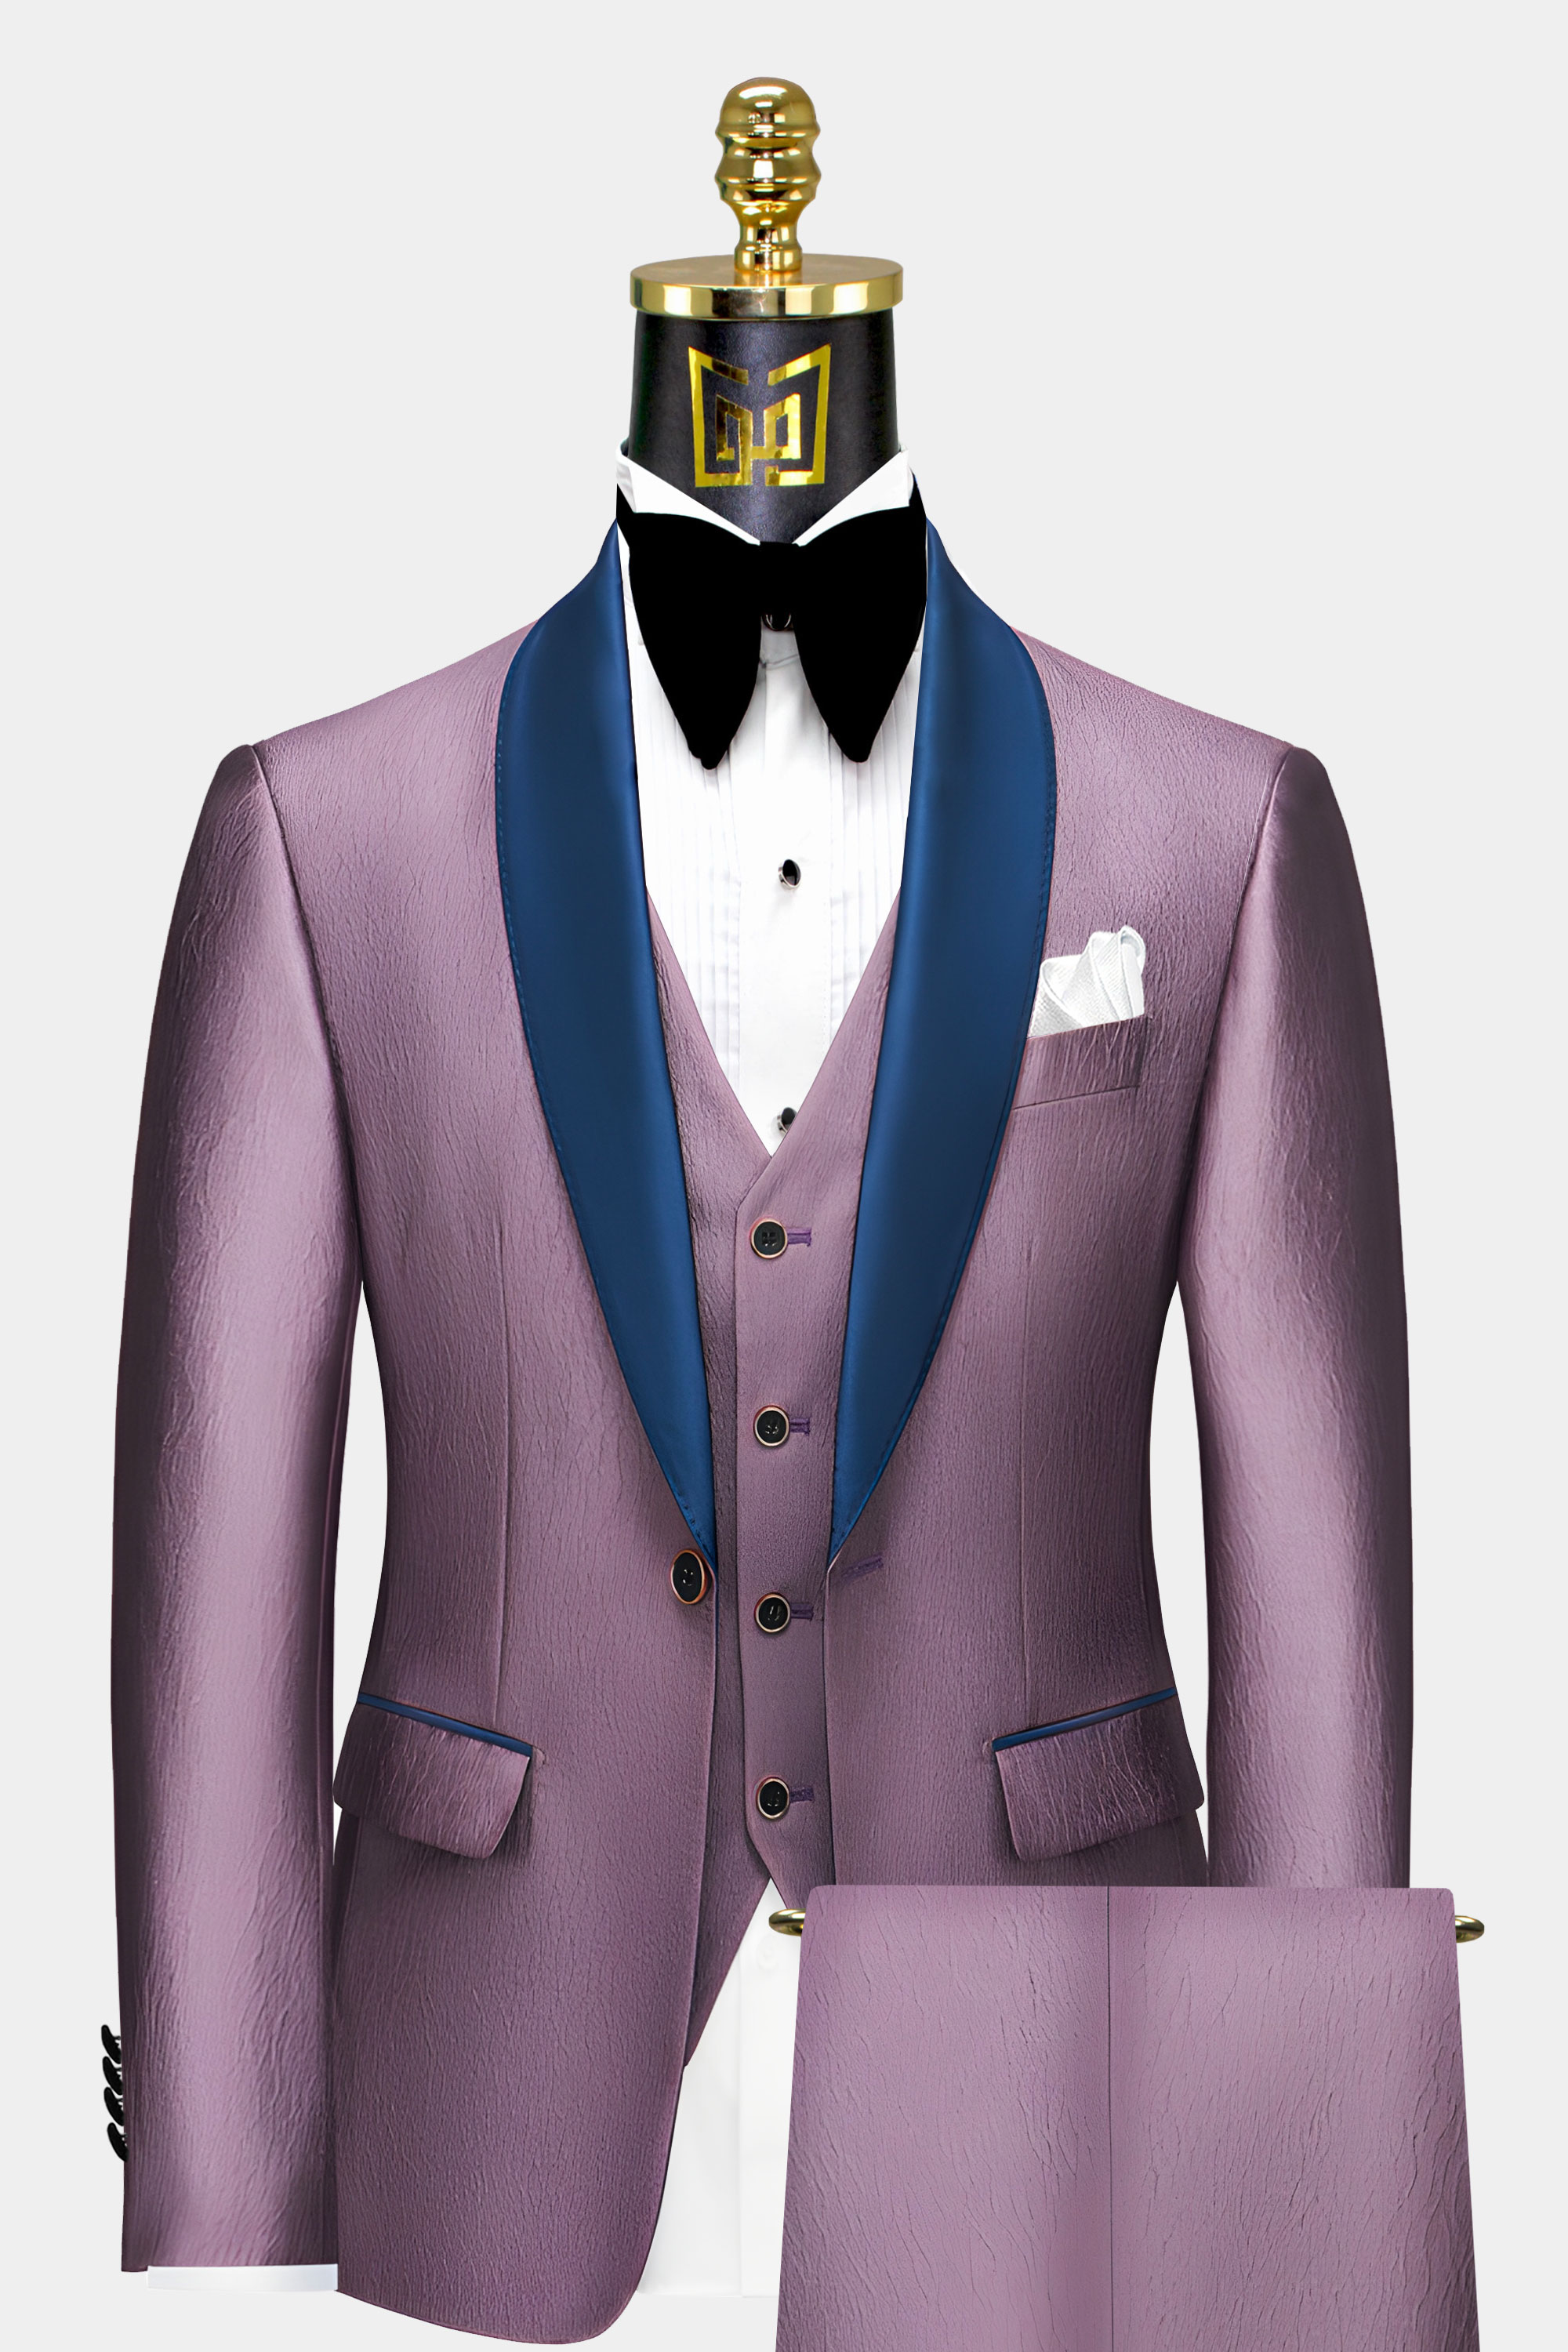 Mens-Light-Plum-Tuxedo-Groom-Wedding-Suit-For-Prom-from-Gentlemansguru.com